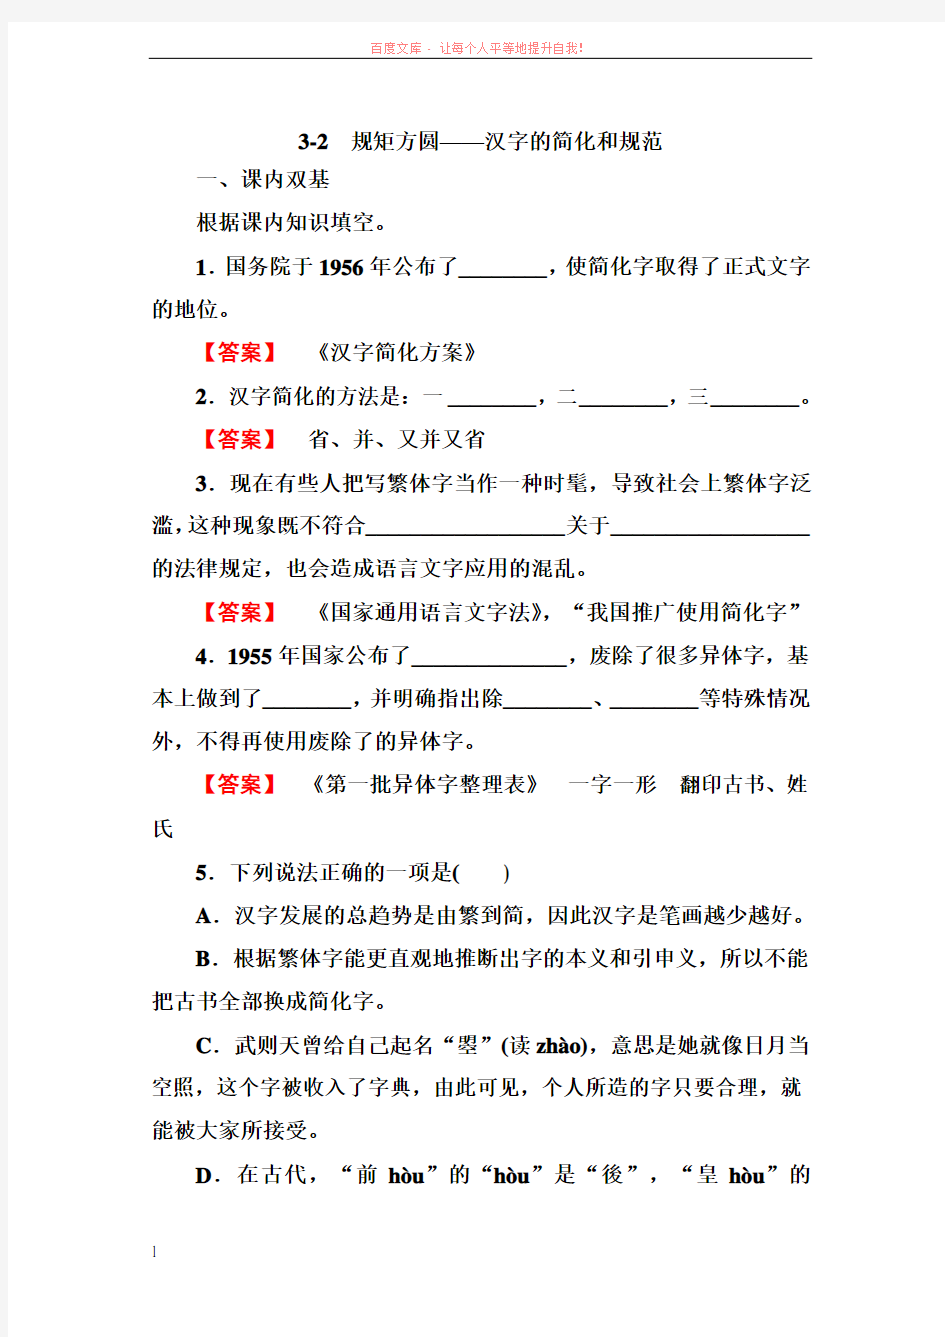 32规矩方圆汉字的简化和规范